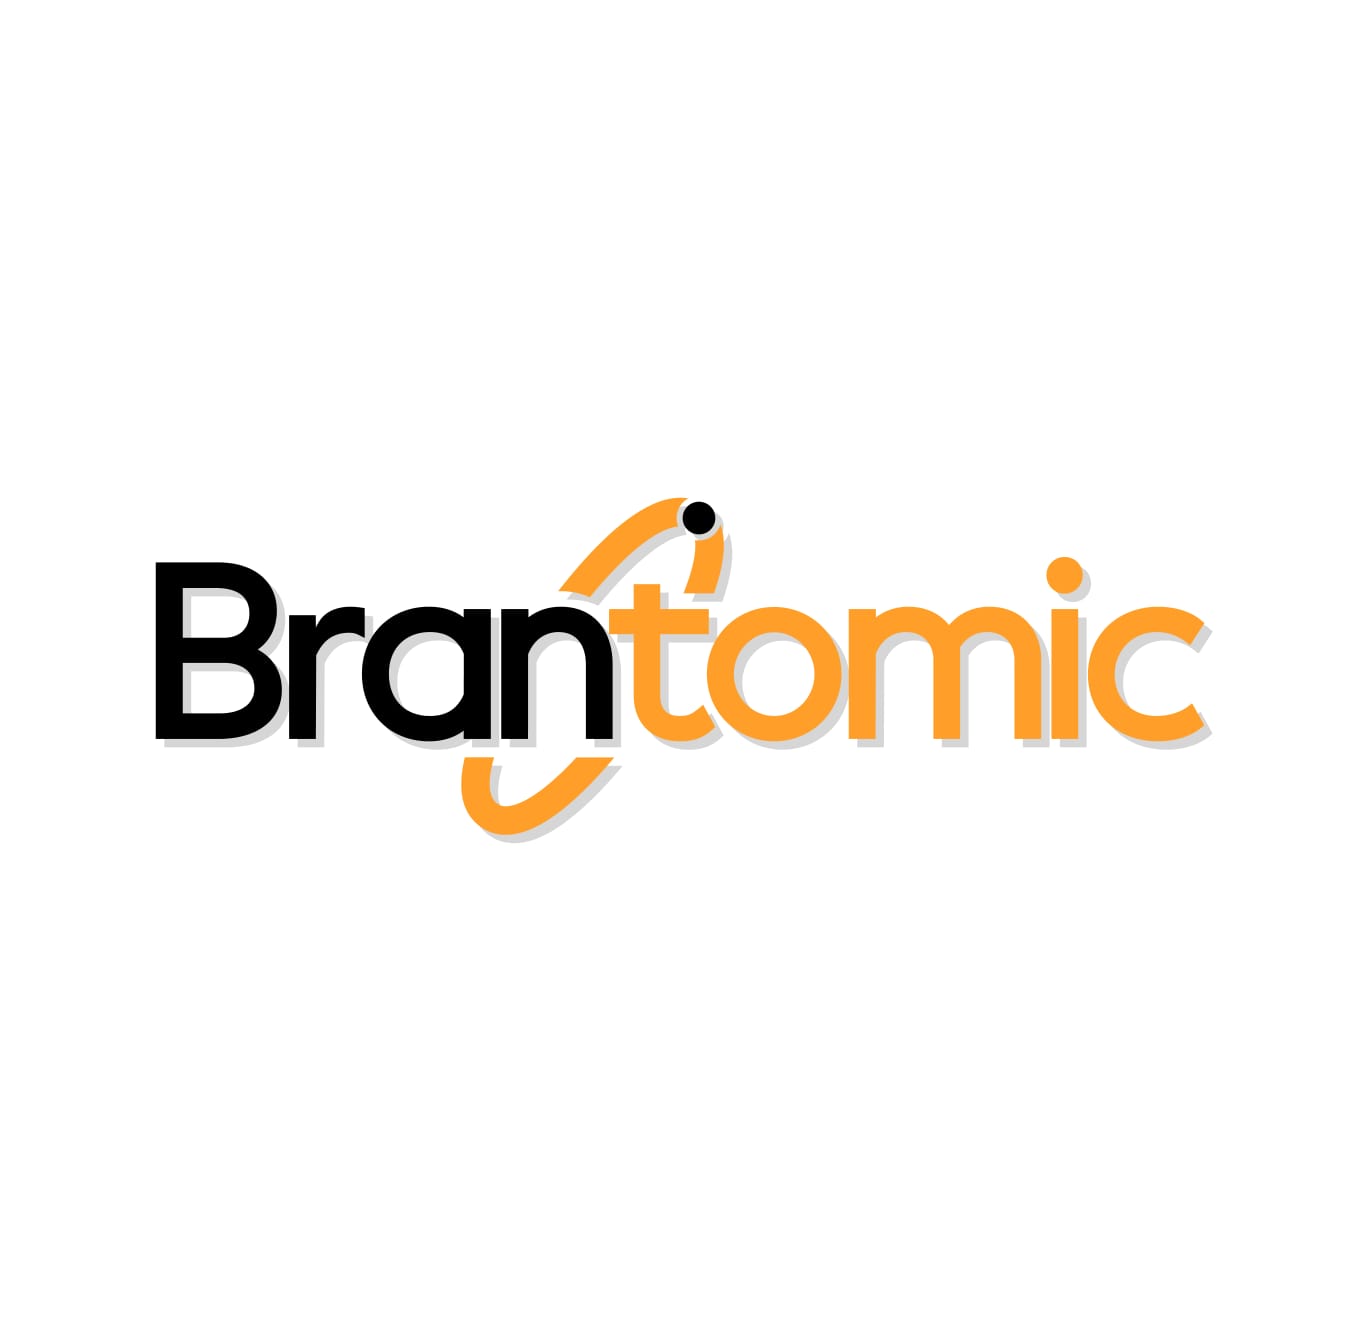 Brantomic